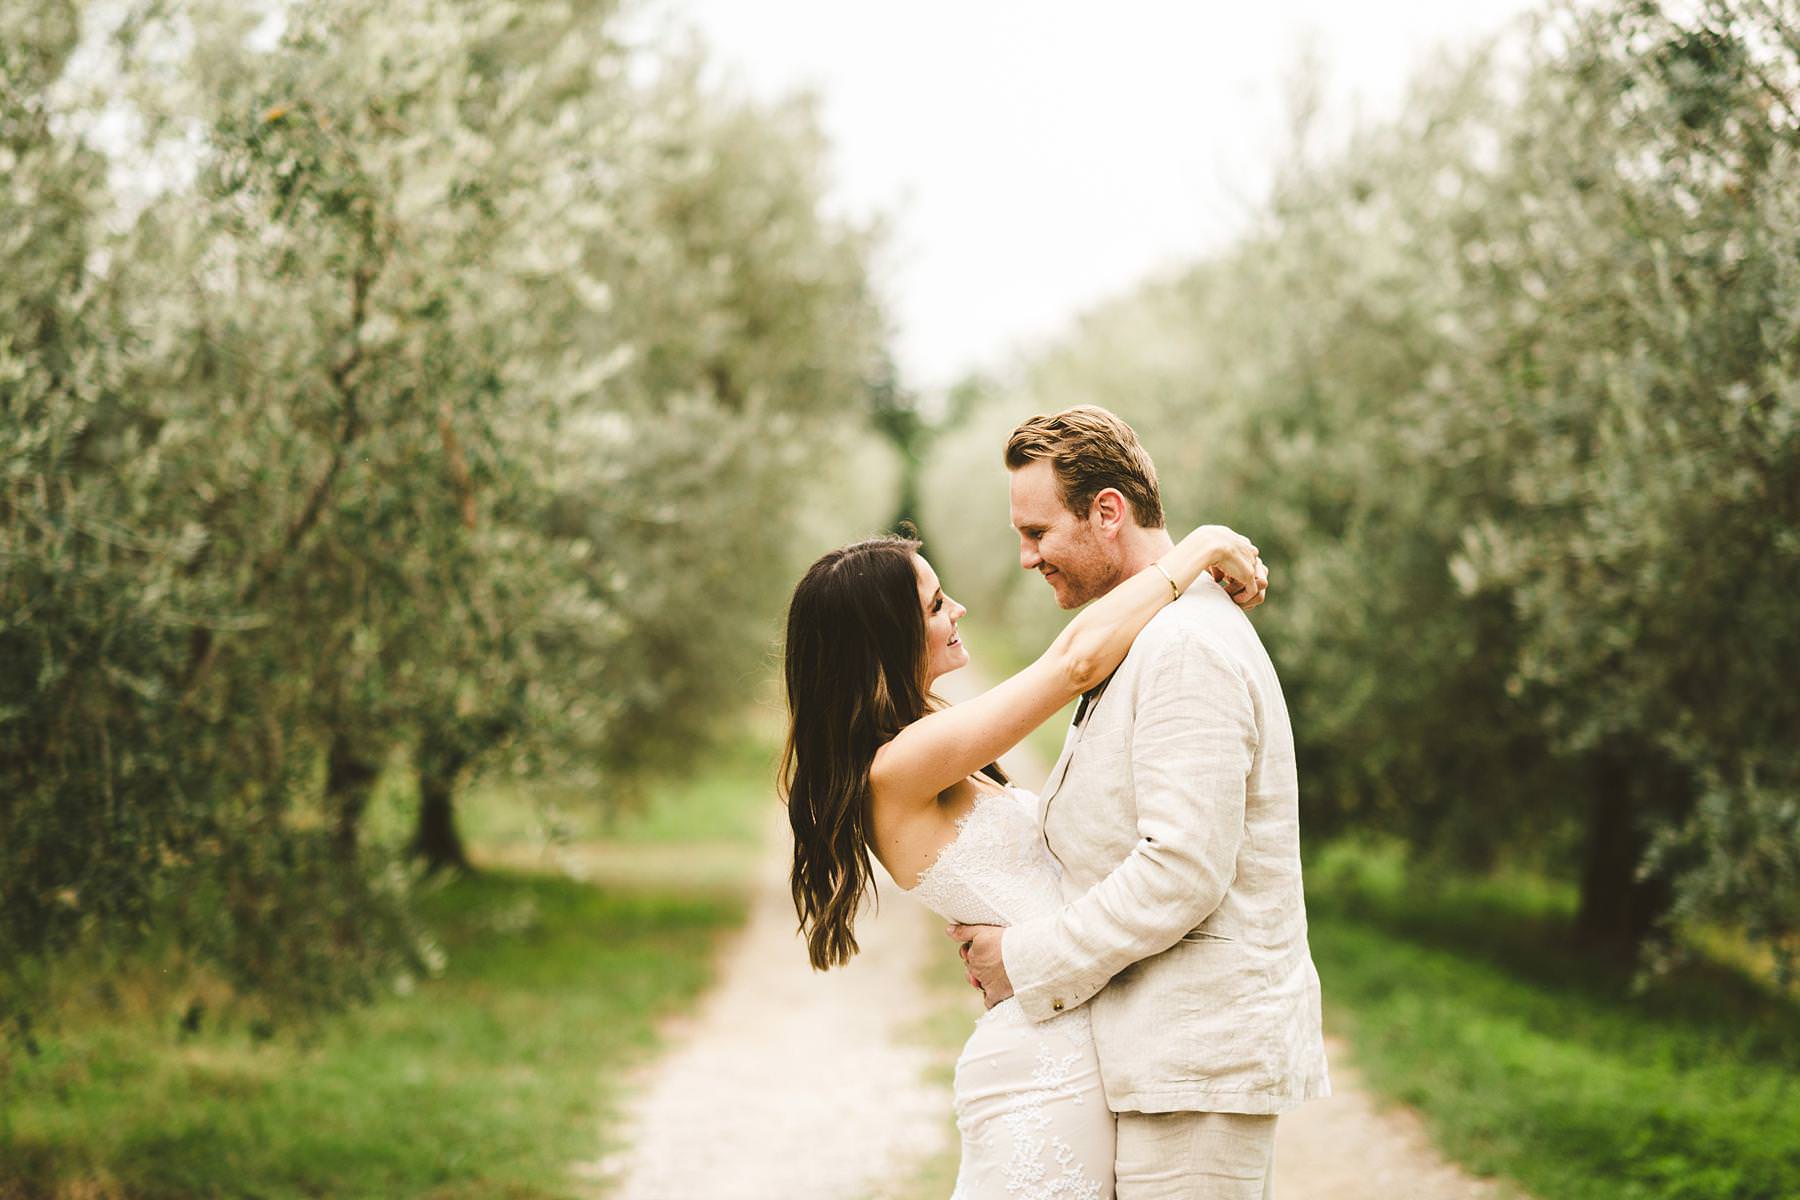 Bride and groom portrait in the countryside of Tuscany in Chianti area near the Villa Il Poggiale venue